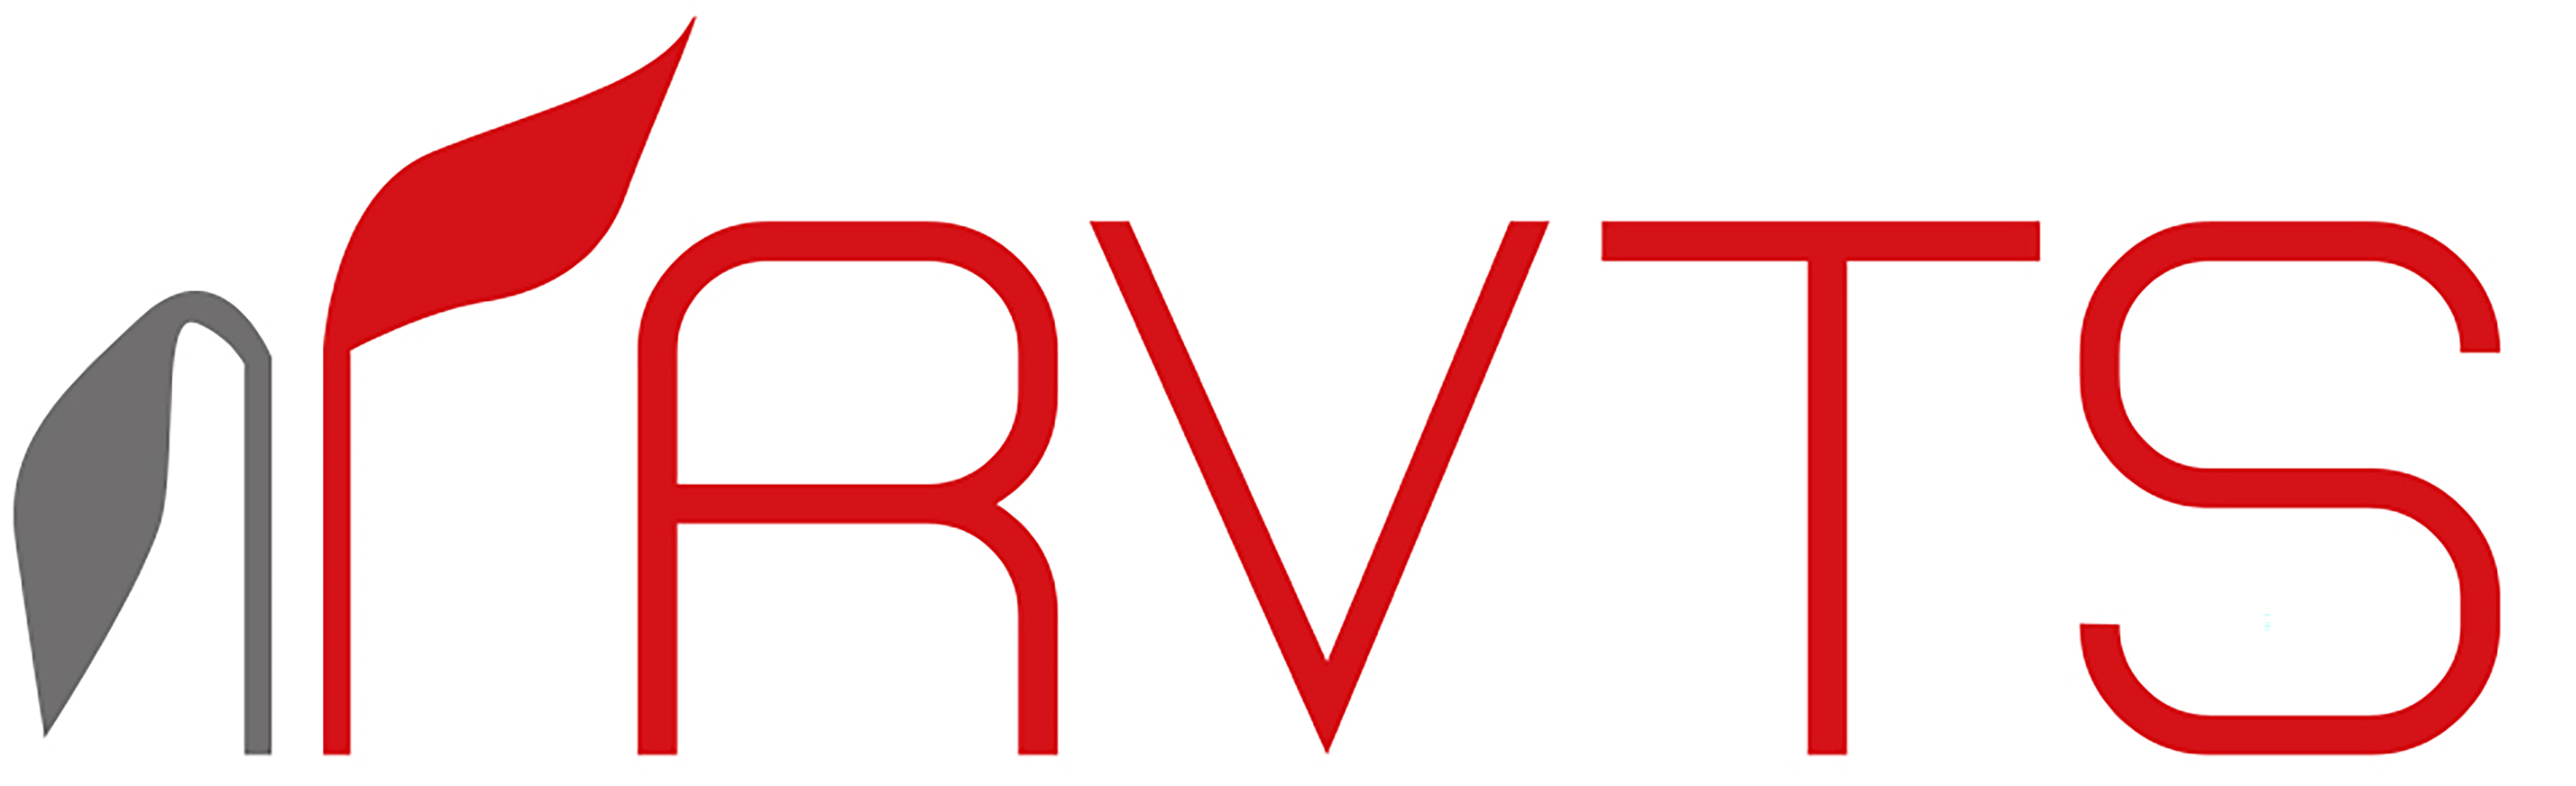 RVTS_logo_CMYK_2100x900.jpg